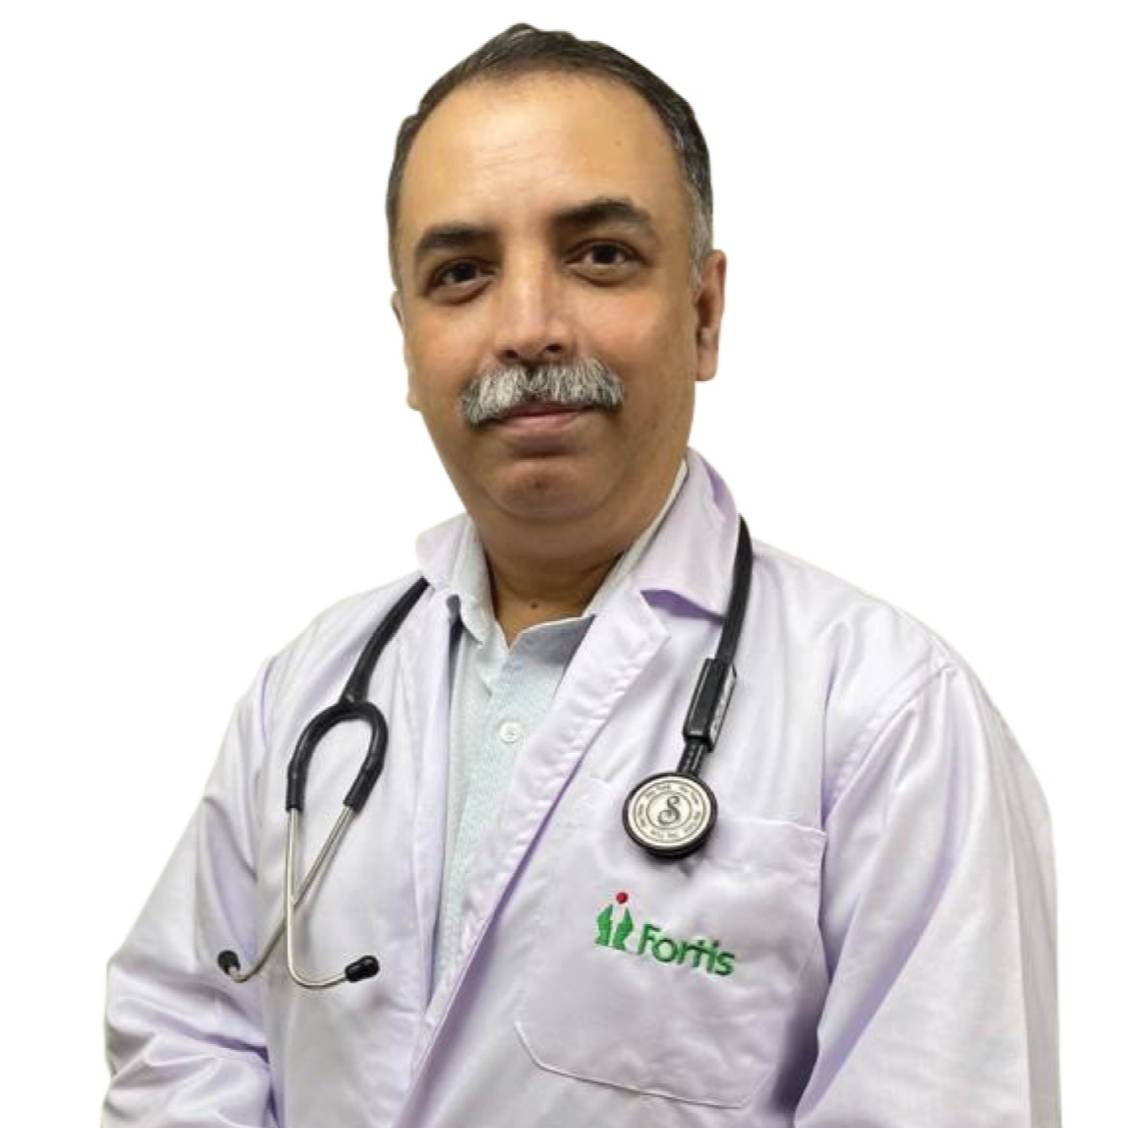 Dr. Ashok Borisa